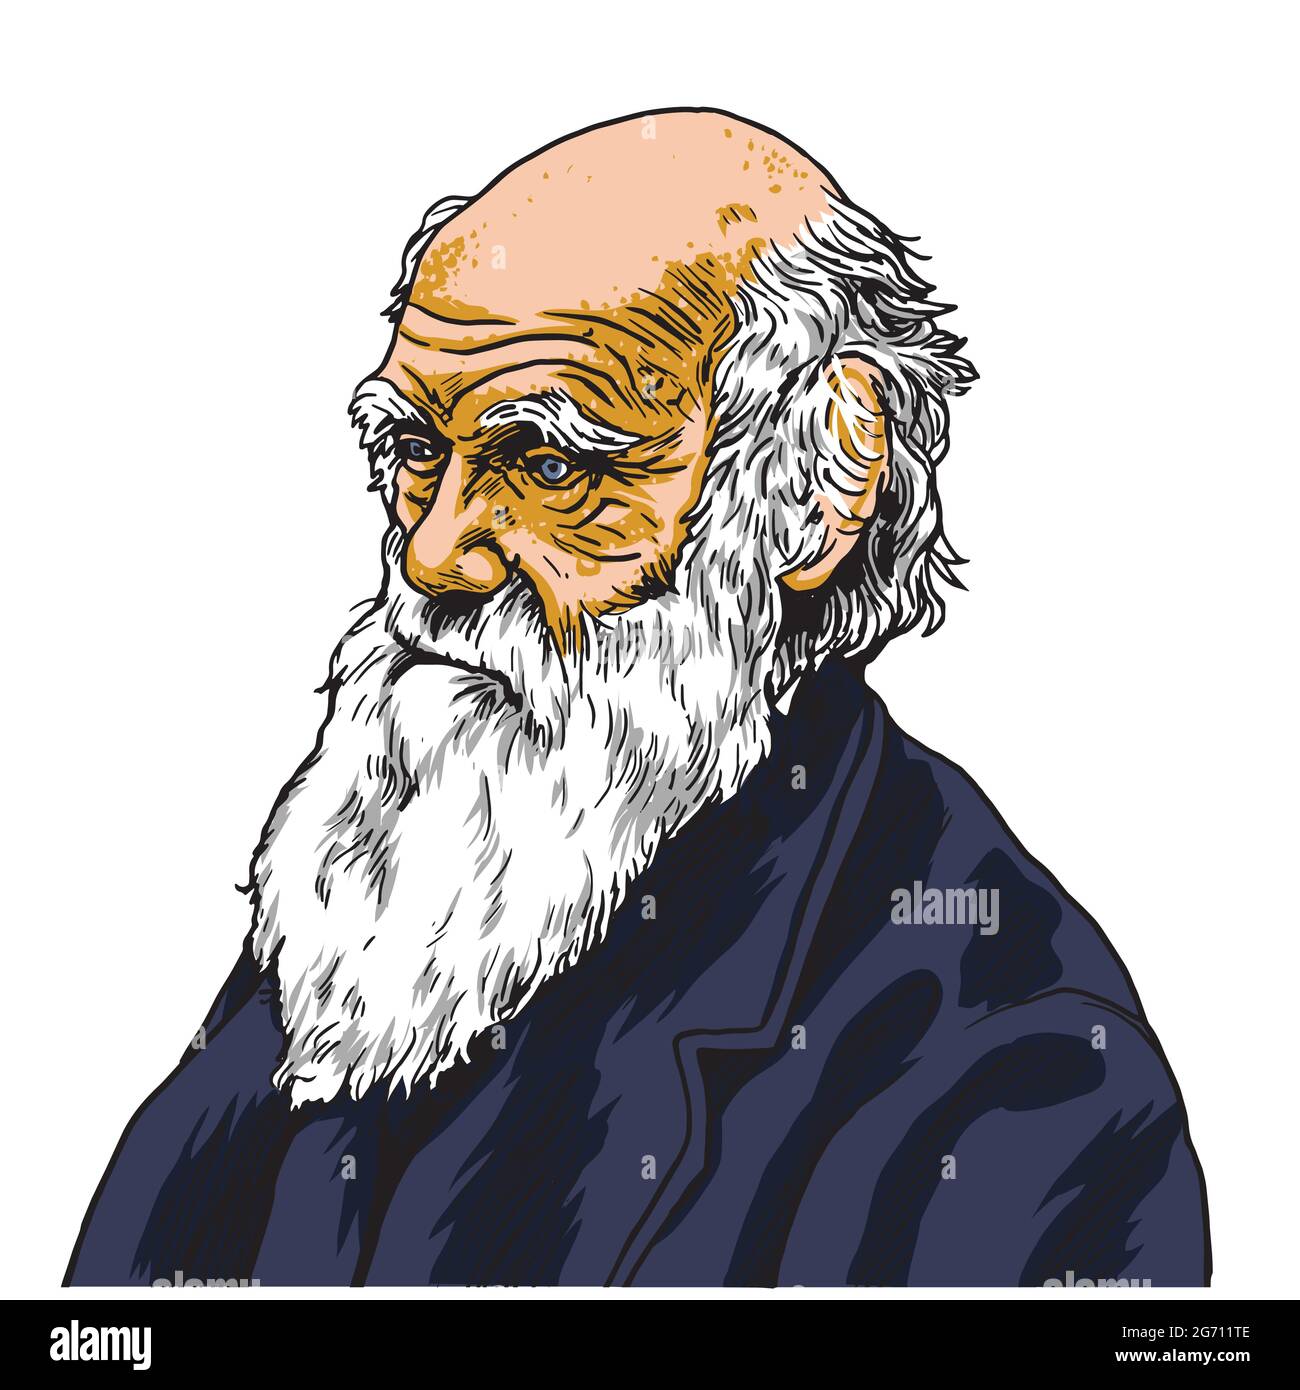 Charles Darwin Vektor Cartoon Karikatur Porträt Illustration. 27. Januar 2019 Stock Vektor